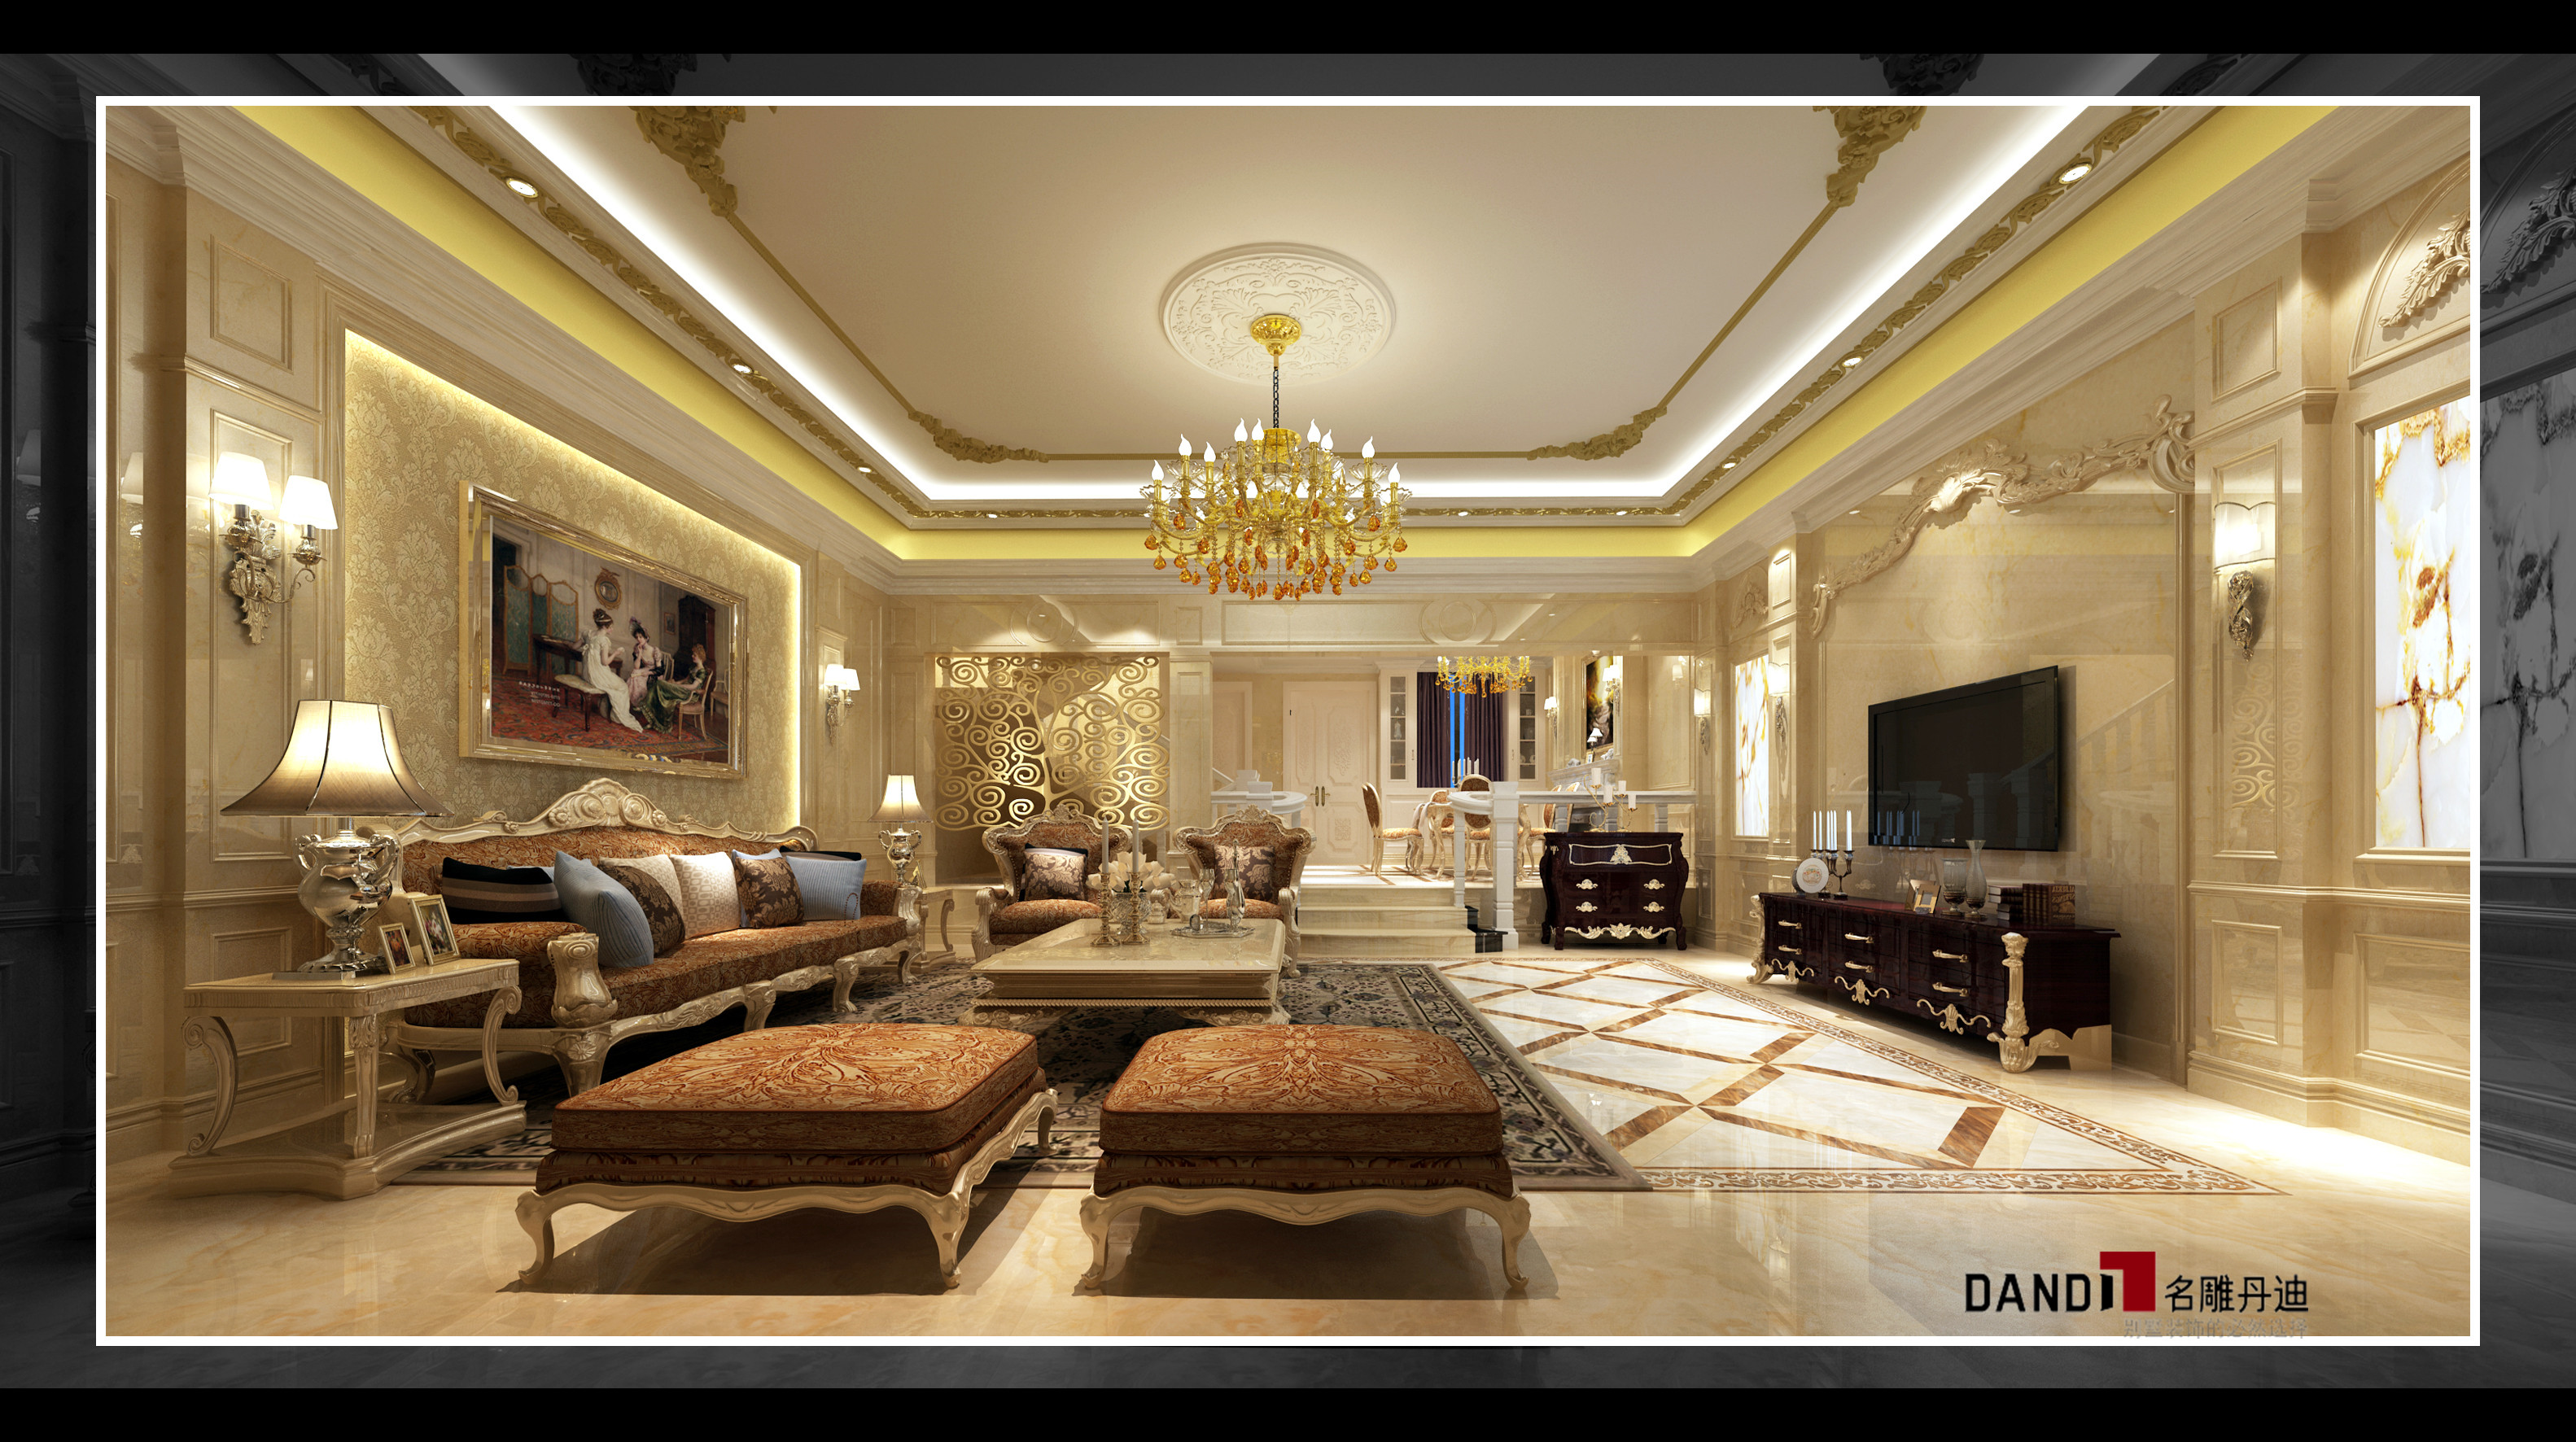 欧式 别墅 完美的典线 细节处理 舒适触感 文化情趣 尊贵与典雅 审美高度 客厅图片来自名雕丹迪在纯水岸欧式别墅的分享